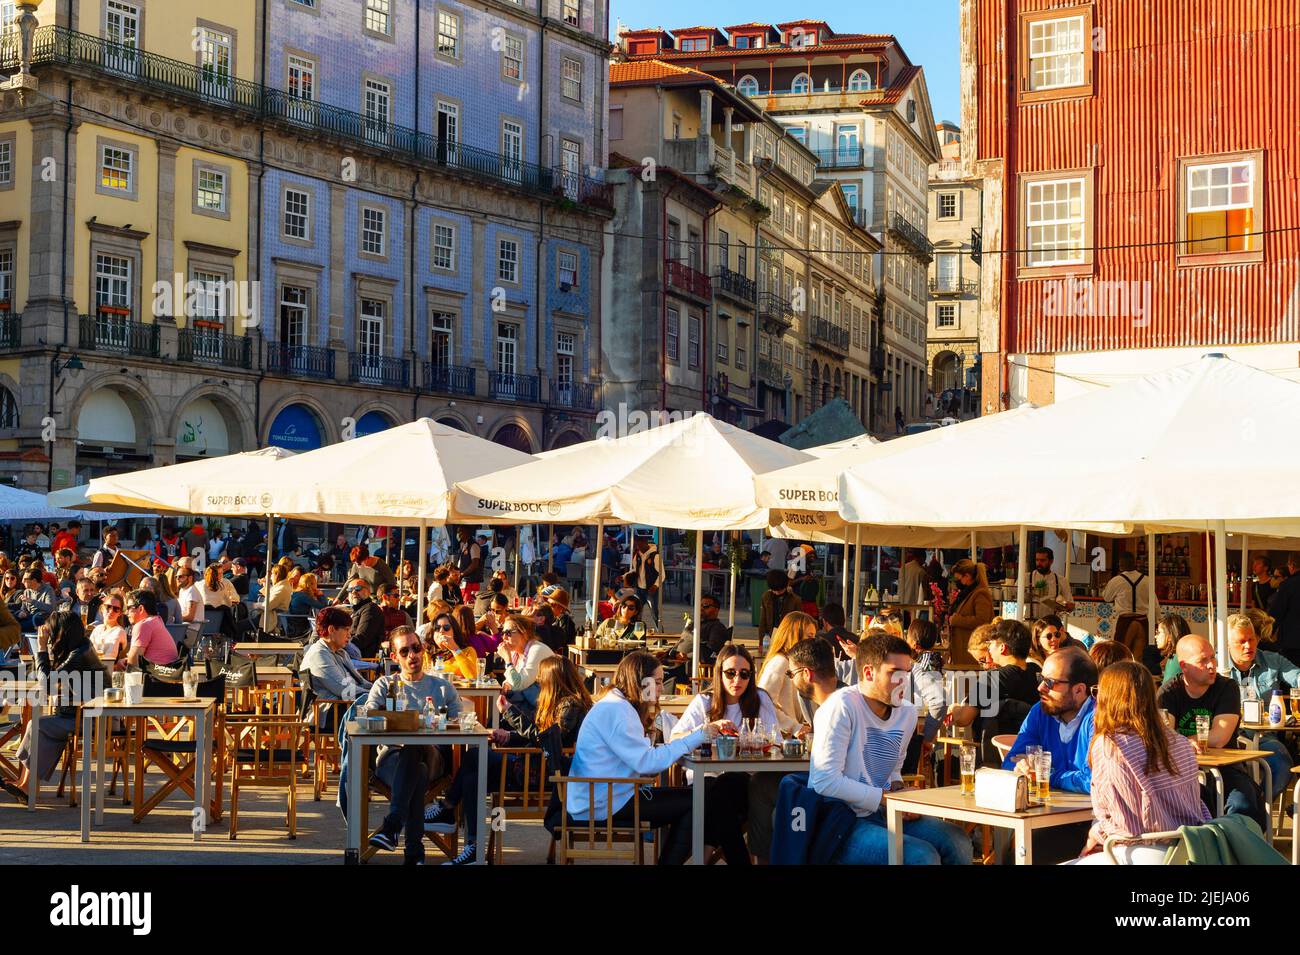 PORTO, PORTUGAL - 7 DE NOVIEMBRE de 2021: Gente sentada en cafés y restaurantes callejeros en el terraplén central, concurrida zona turística, arquitecto tradicional Foto de stock